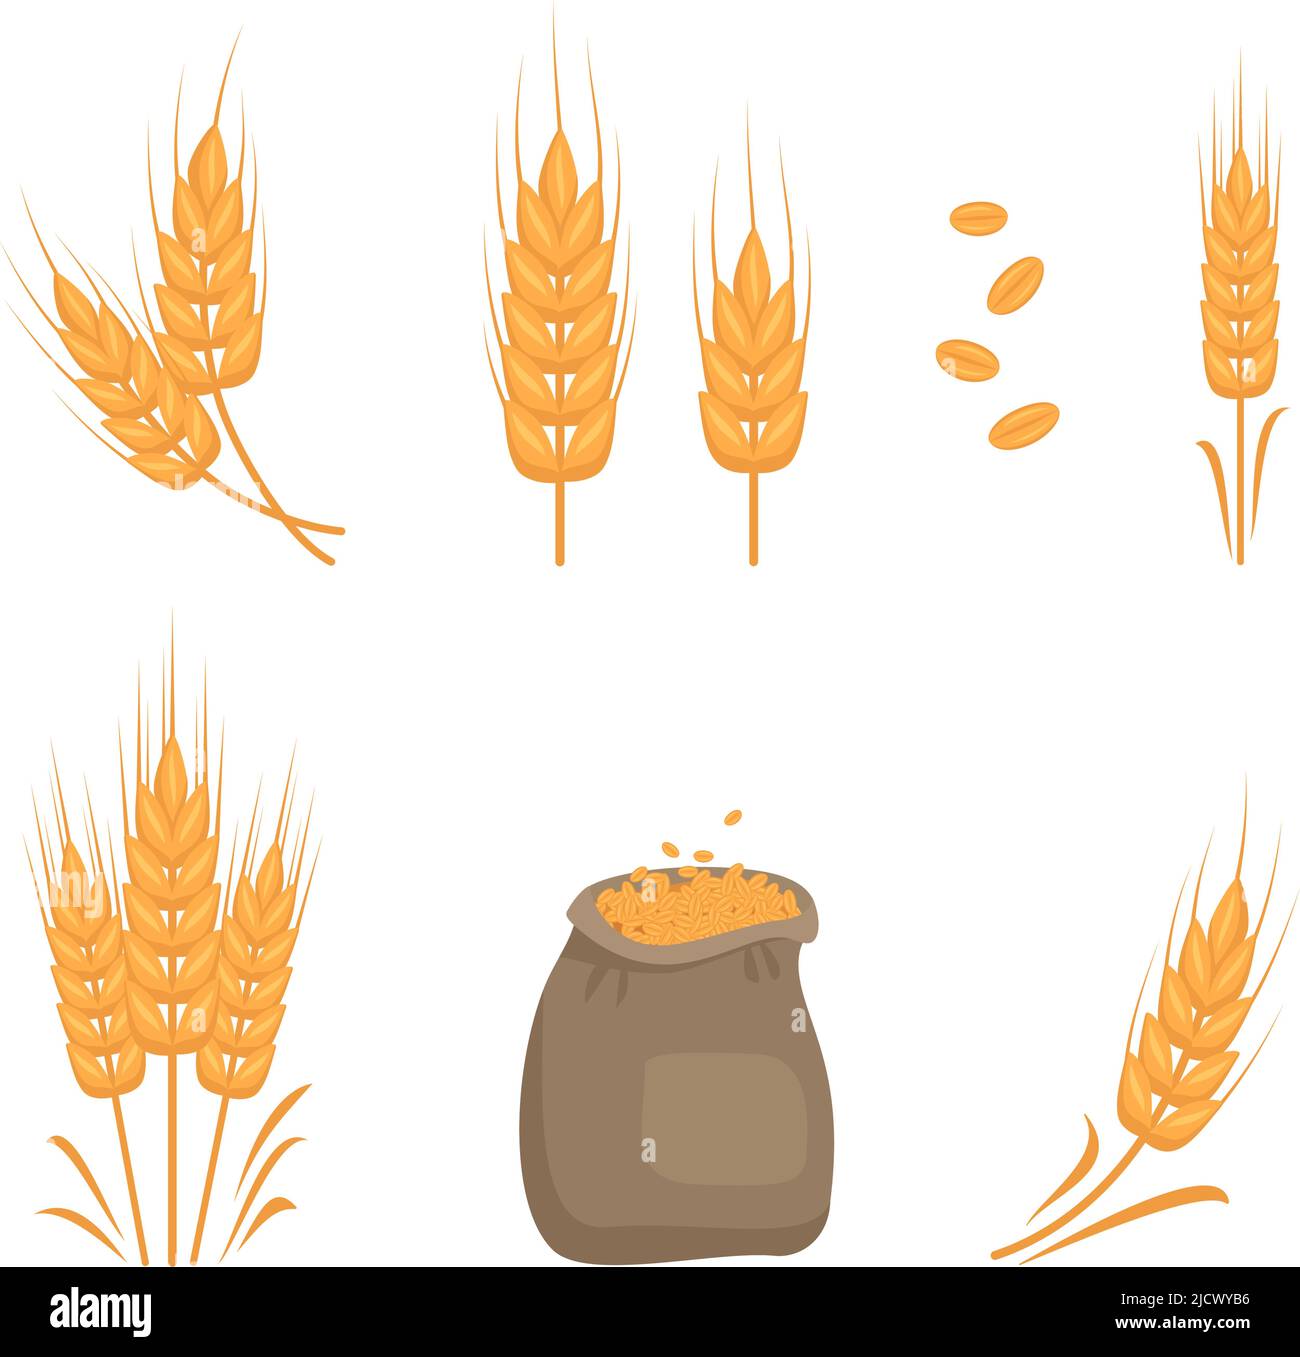 Ensemble d'épis de blé dorés, grains pour la fabrication de farine, pain à pâte et autres produits alimentaires et sac de graines. Illustration vectorielle plate Illustration de Vecteur